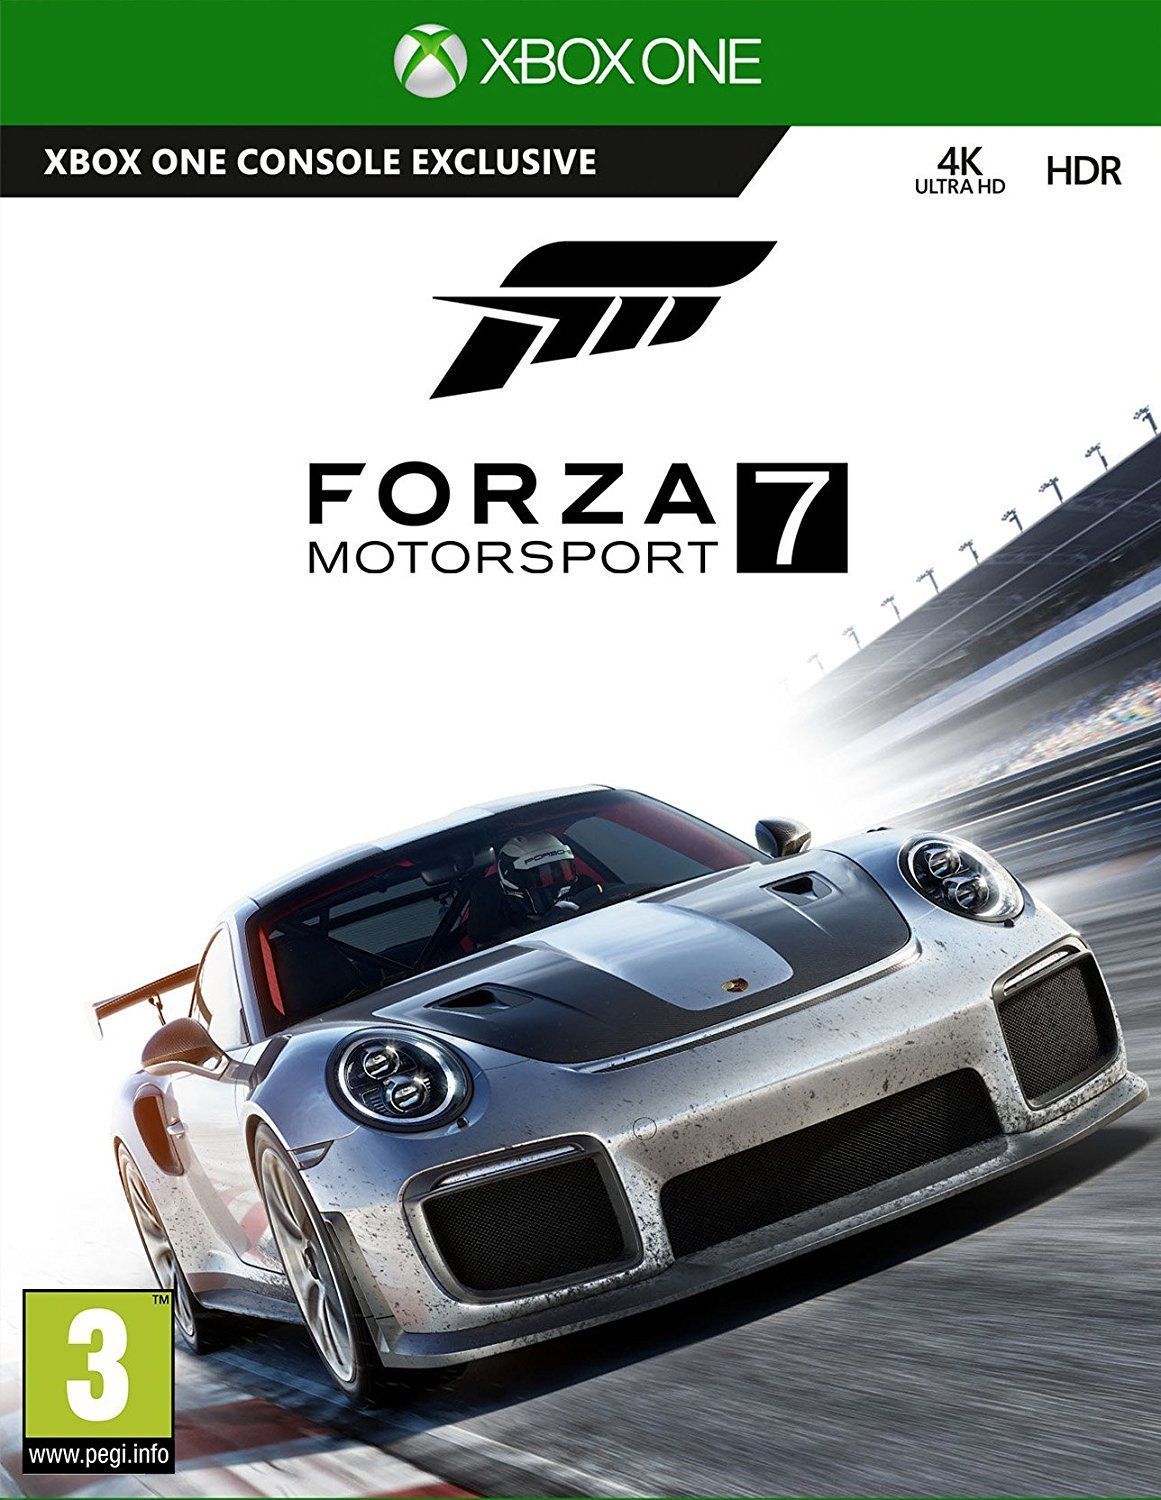 Lista de coches completa de Forza Motorsport 7 en Xbox One y PC